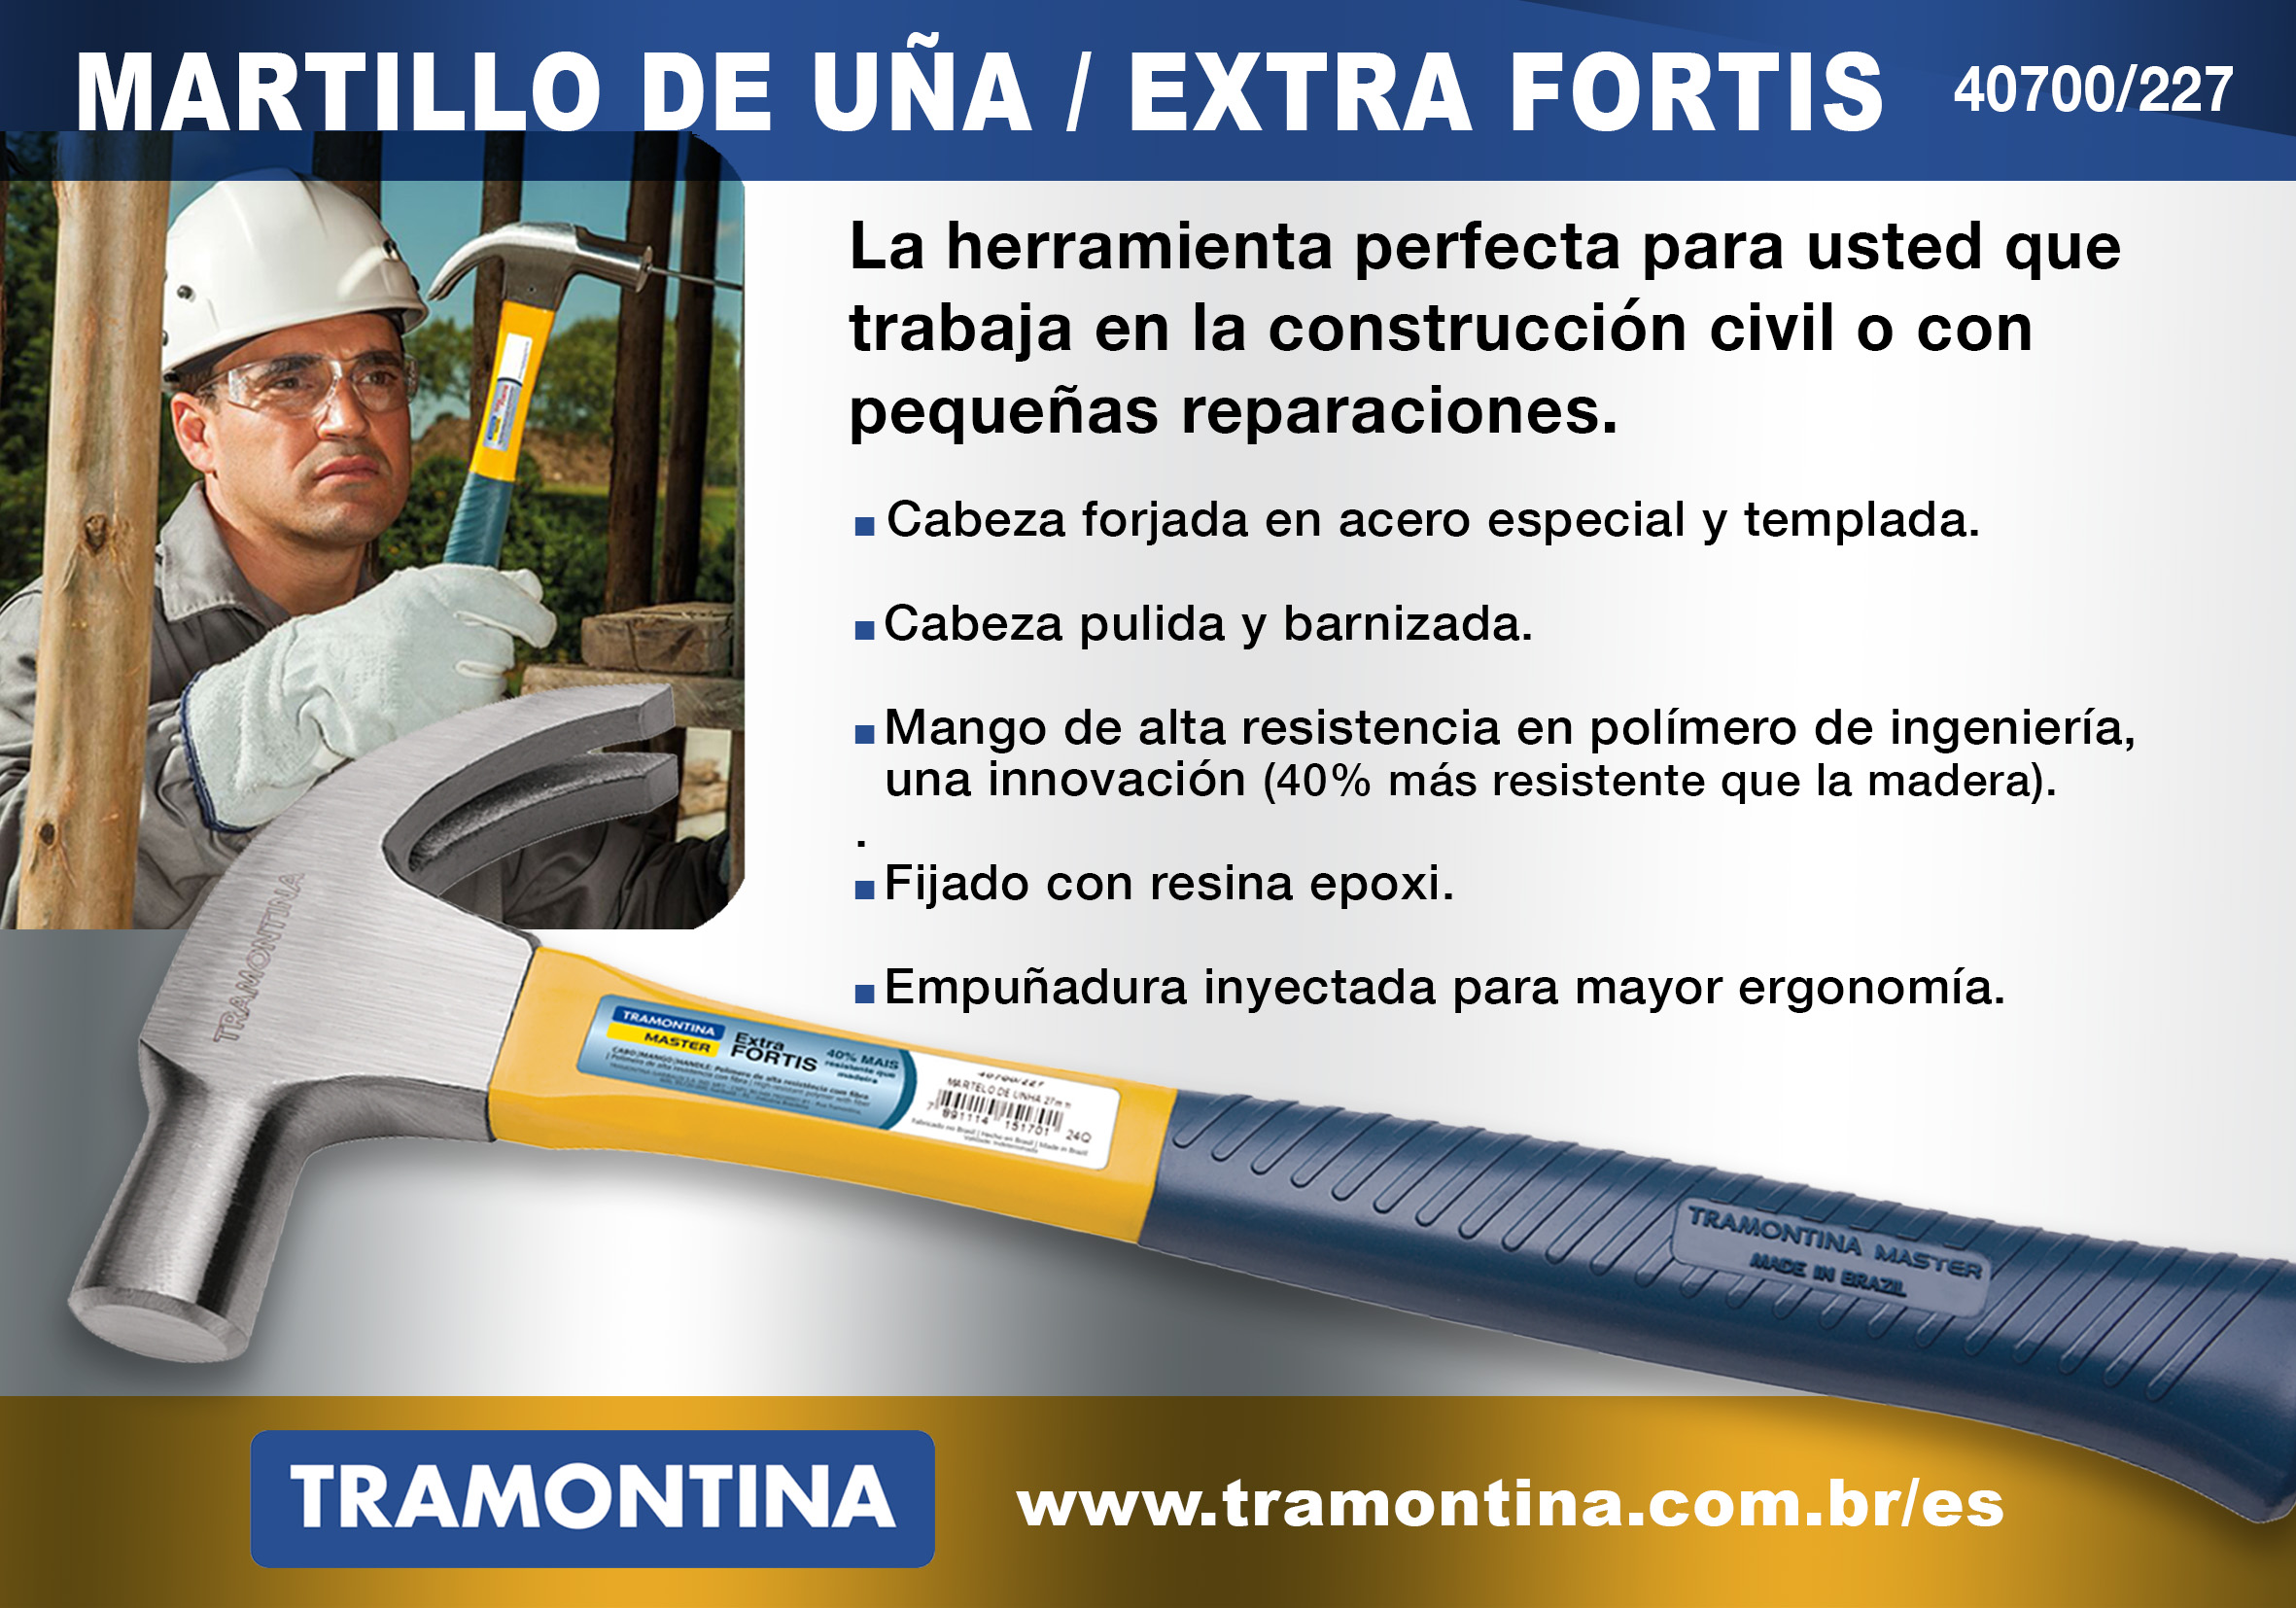 Required module Hearing impaired Visión Ferretera | Tu revista por excelencia en el sector ferretero en  Chile.